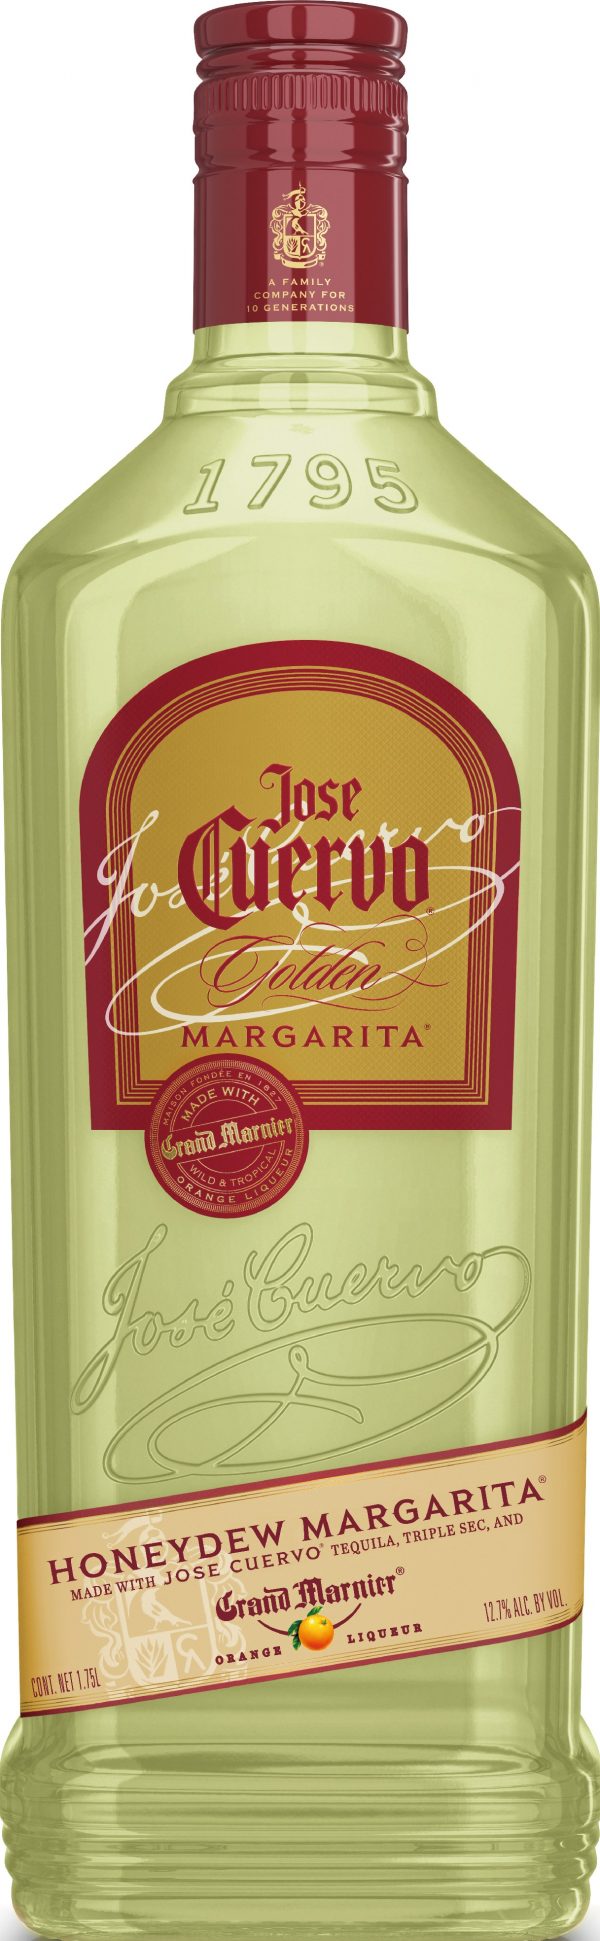 Zoom to enlarge the Jose Cuervo Golden Honeydew Margarita